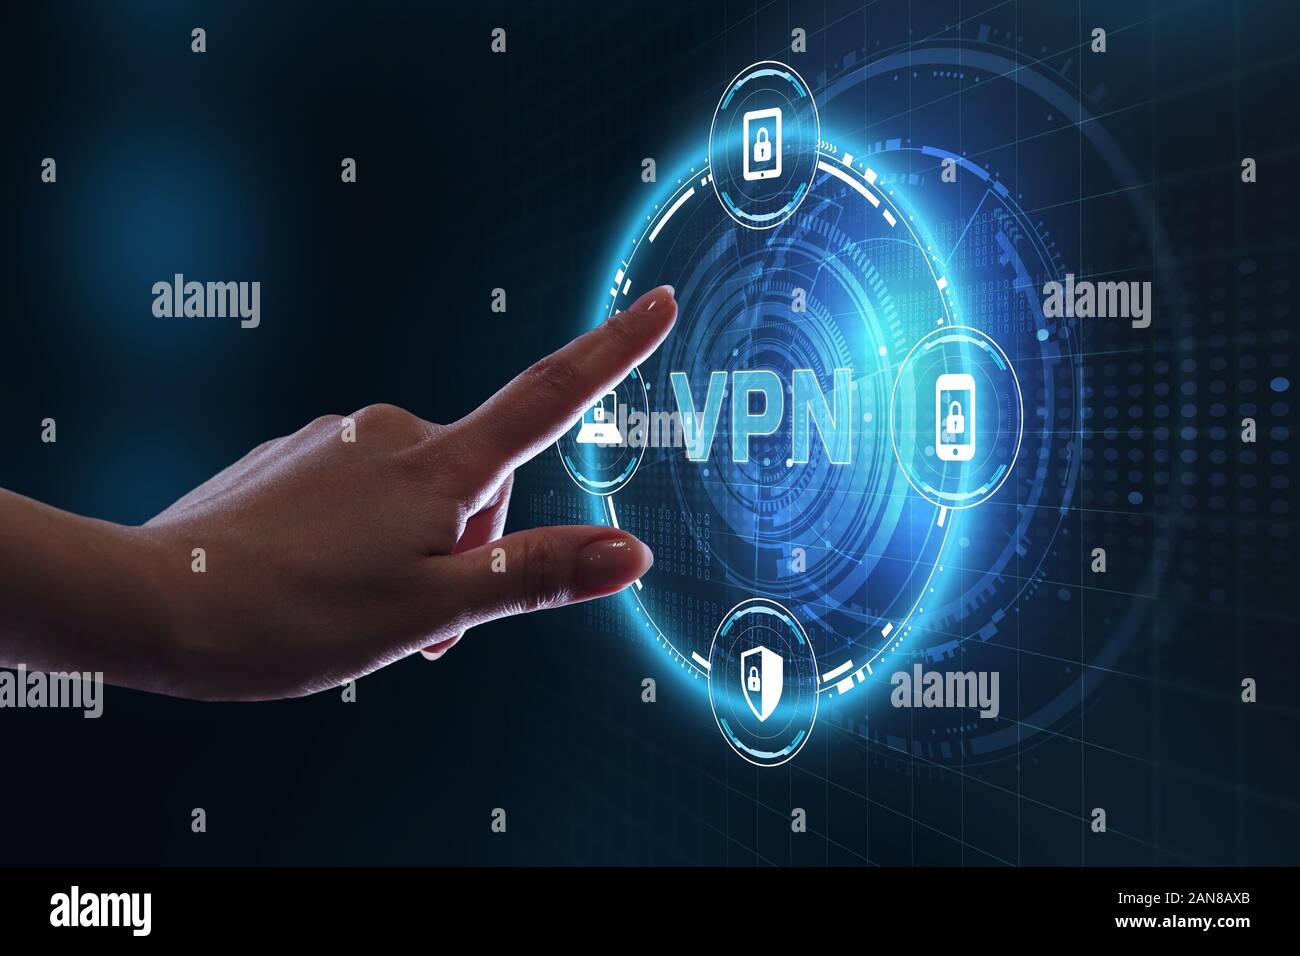 Wirtschaft, Technologie, Internet und Netzwerk Konzept. VPN-Netzwerk sicherheit internet Datenschutz Verschlüsselung Konzept. Stockfoto